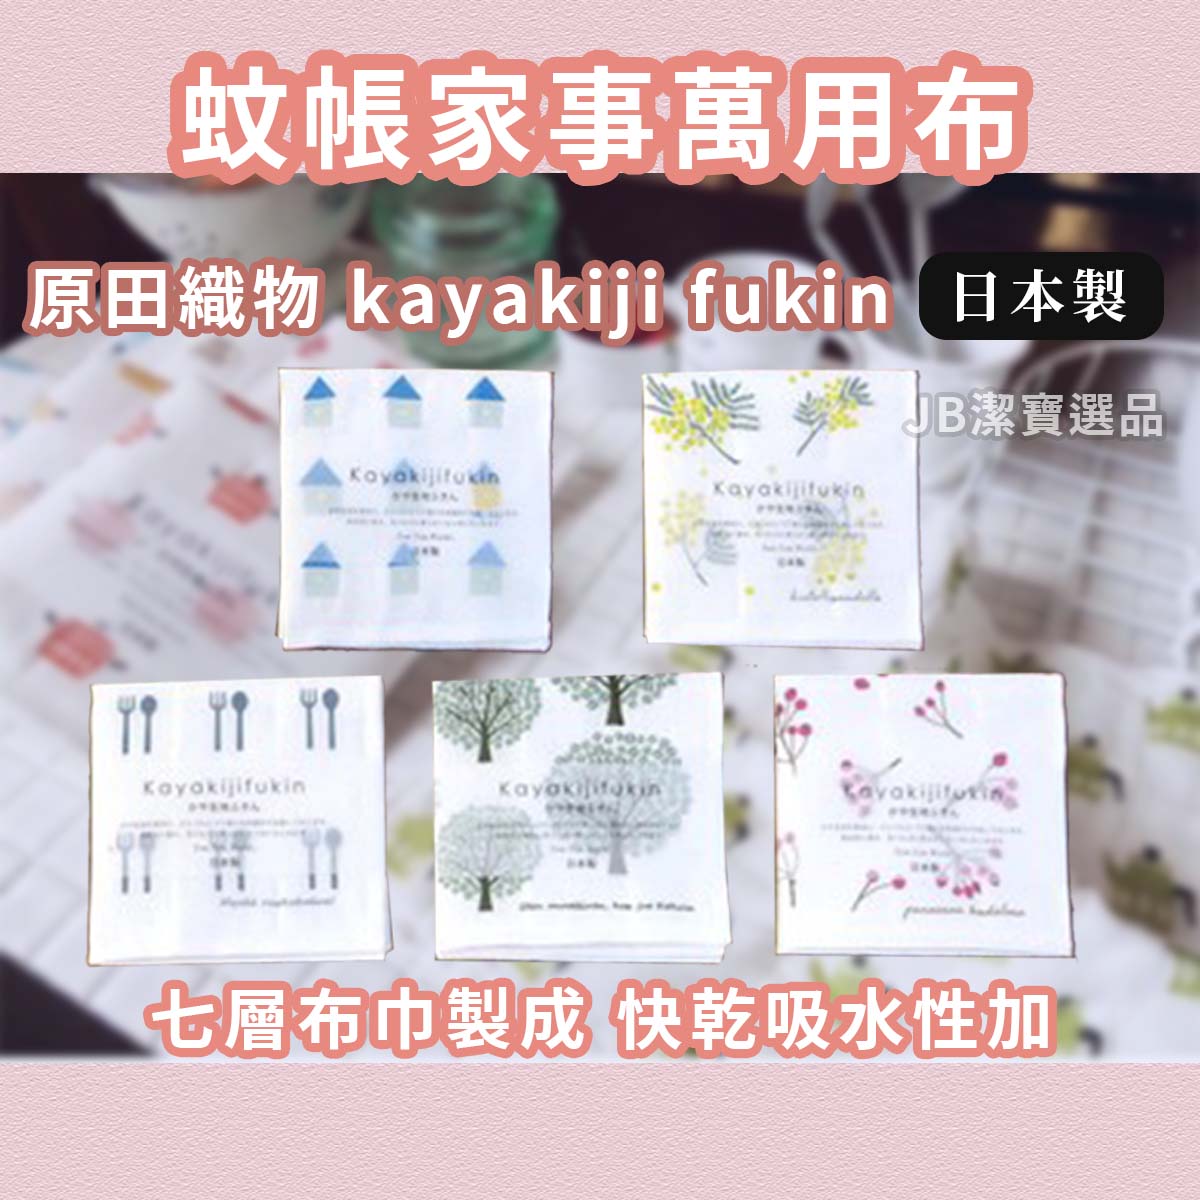 日本製 原田織物 kayakiji fukin 食器擦拭布 共21款 7層棉紗 家事布 蚊帳材質 抹布 廚房清潔